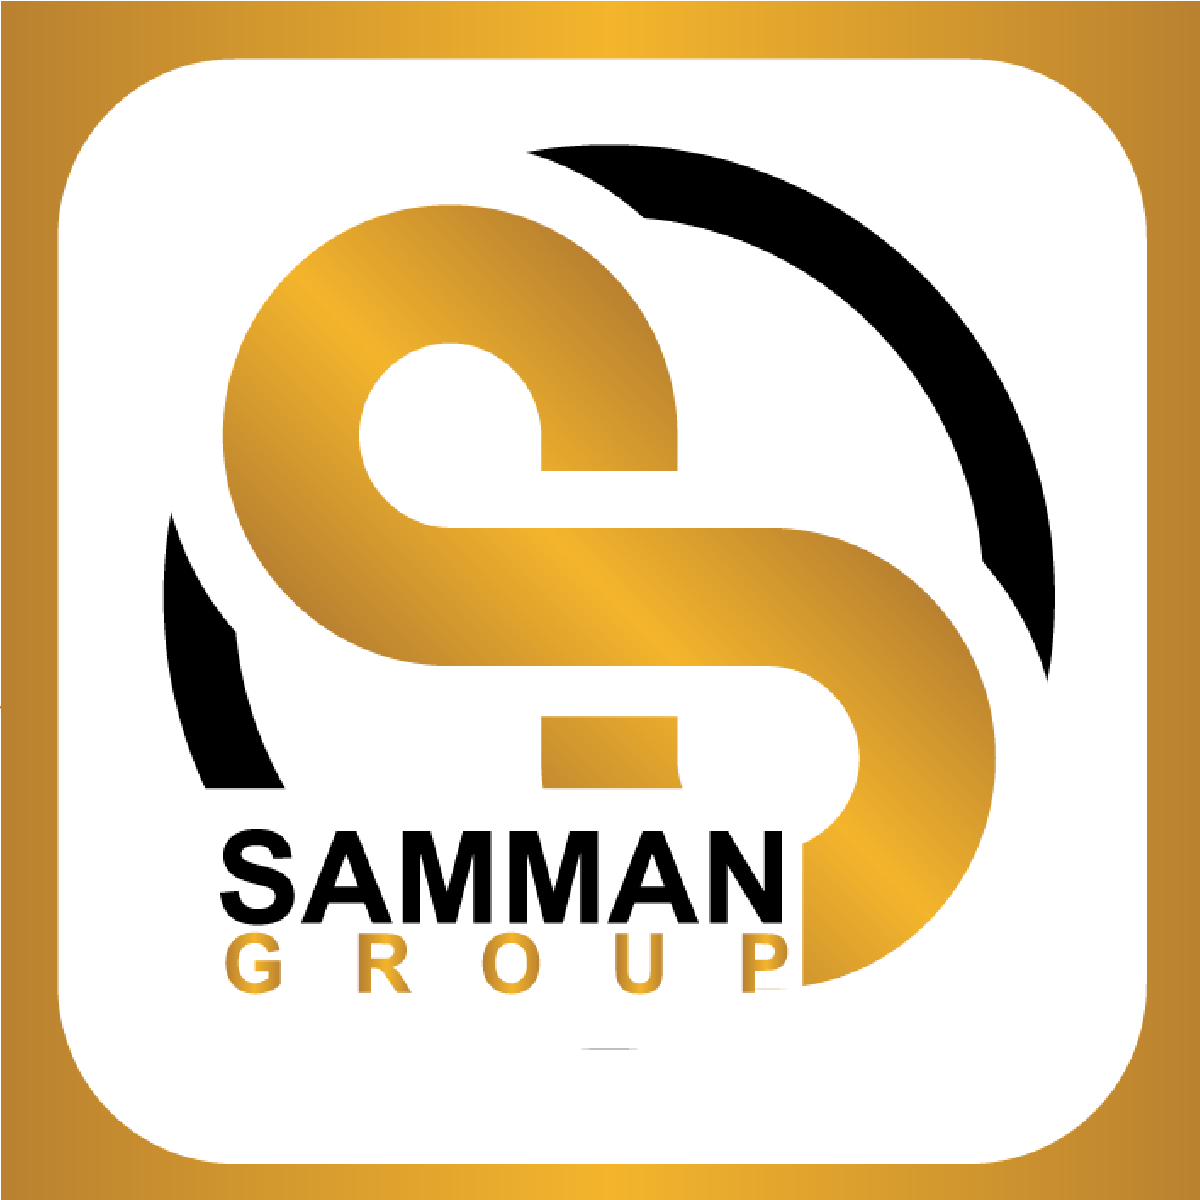 El Samman Group